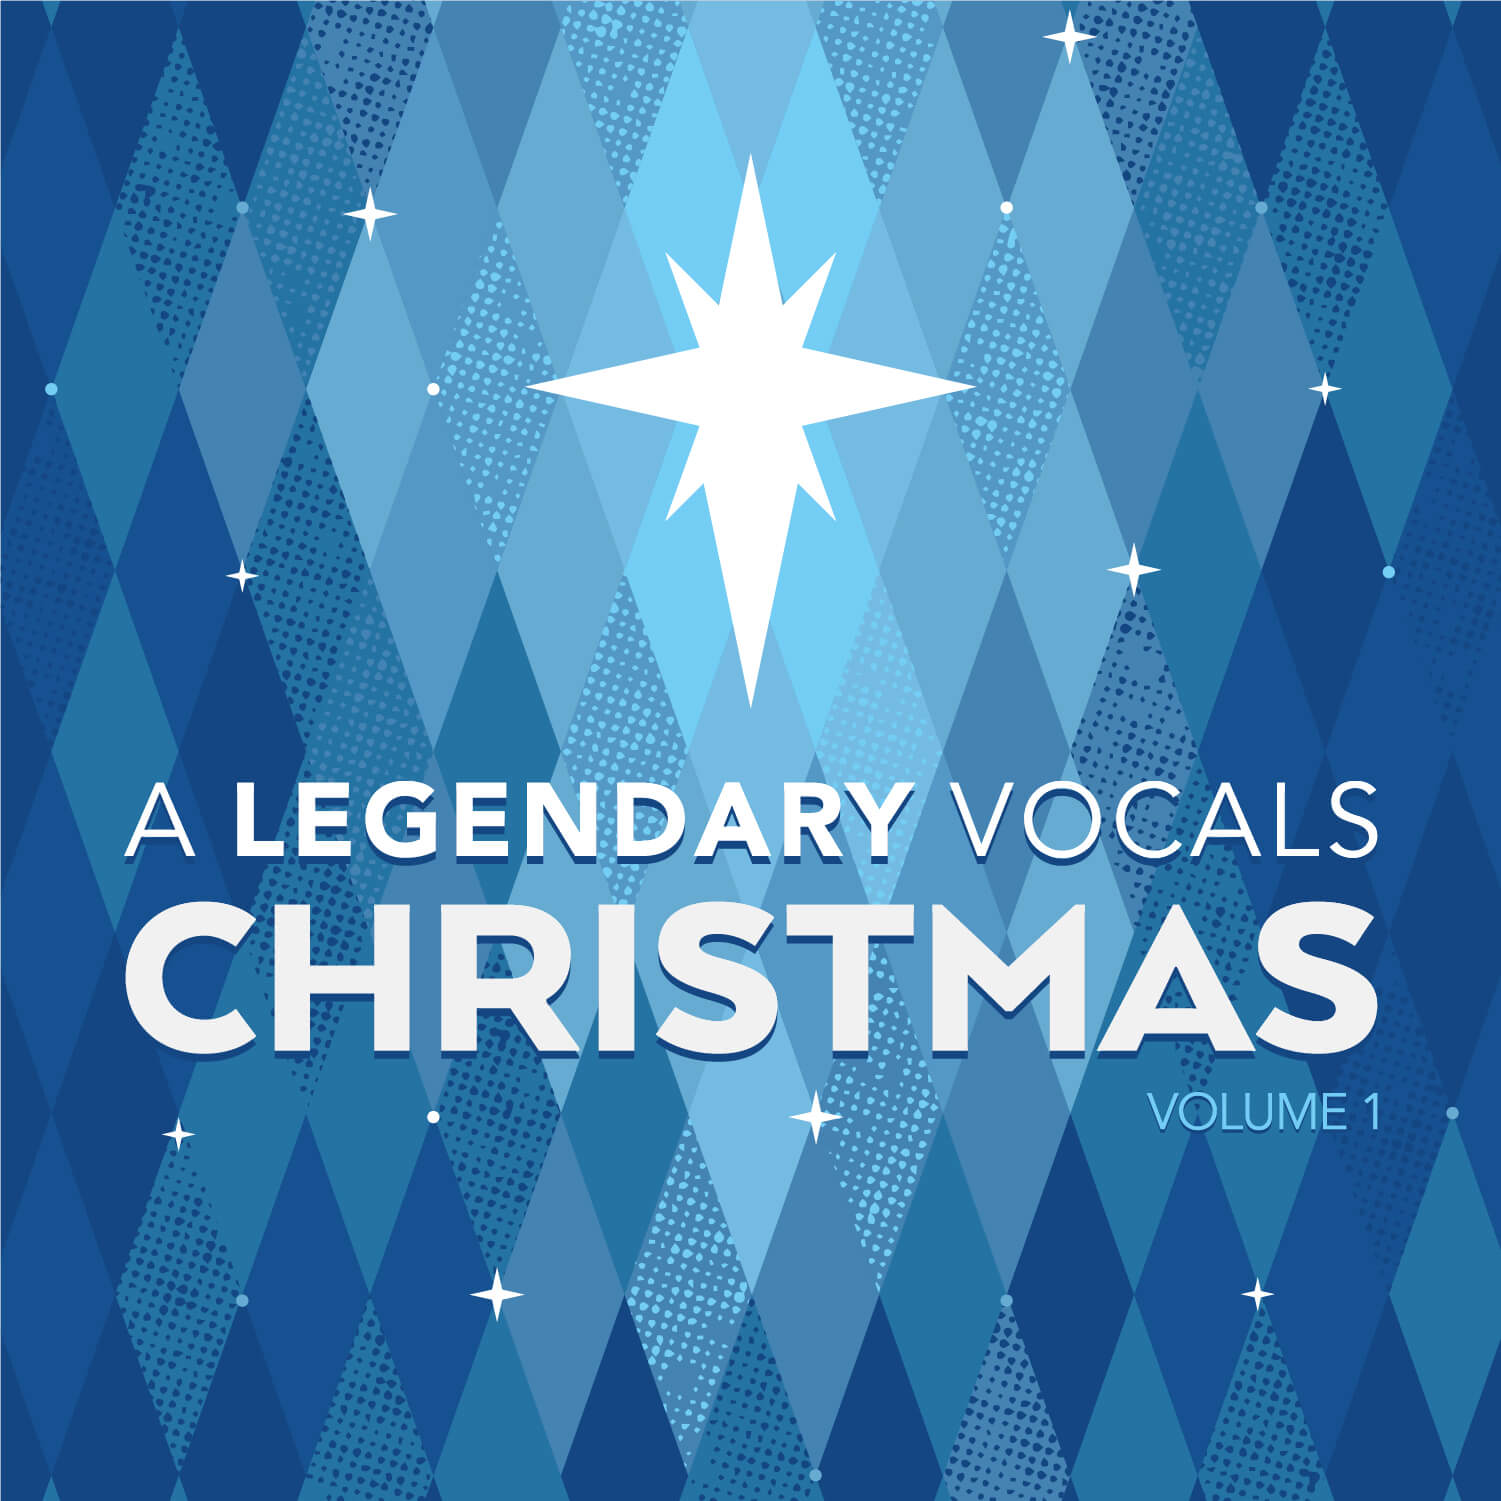 A Legendary Vocals Christmas Vol. 1